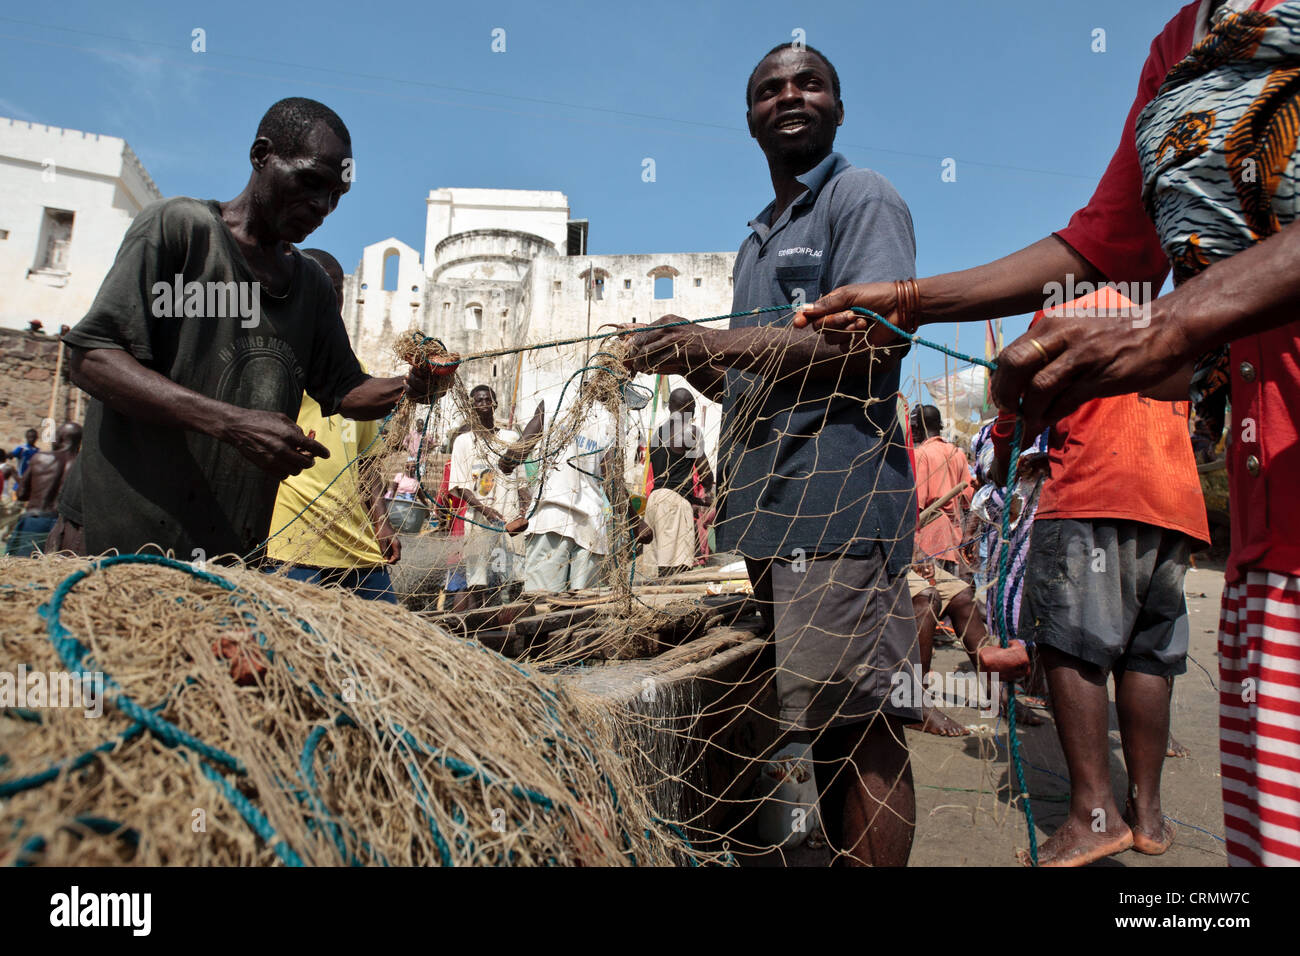 Les pêcheurs réparant les filets de pêche dans la région de Cape Coast, Ghana Banque D'Images